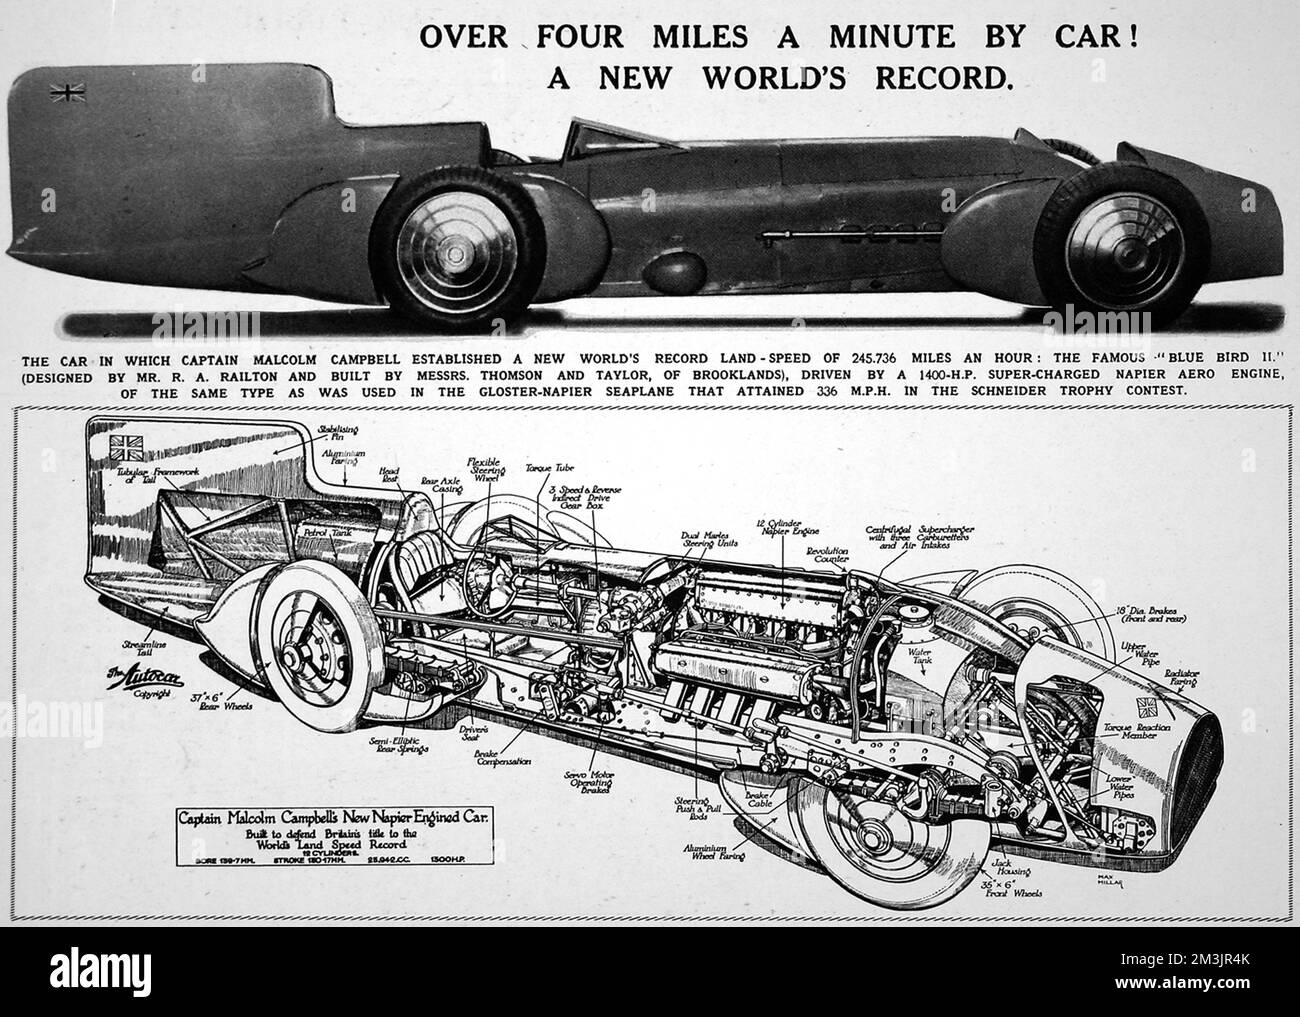 Der „Blue Bird II“ – das Auto, in dem Malcolm Campbell einen neuen Weltrekord bei der Geschwindigkeit von 245,736 km/h auf dem Land aufstellte. Die Abbildung zeigt das Äußere des Fahrzeugs und einen Querschnitt. Datum: Februar 14. 1931 Stockfoto